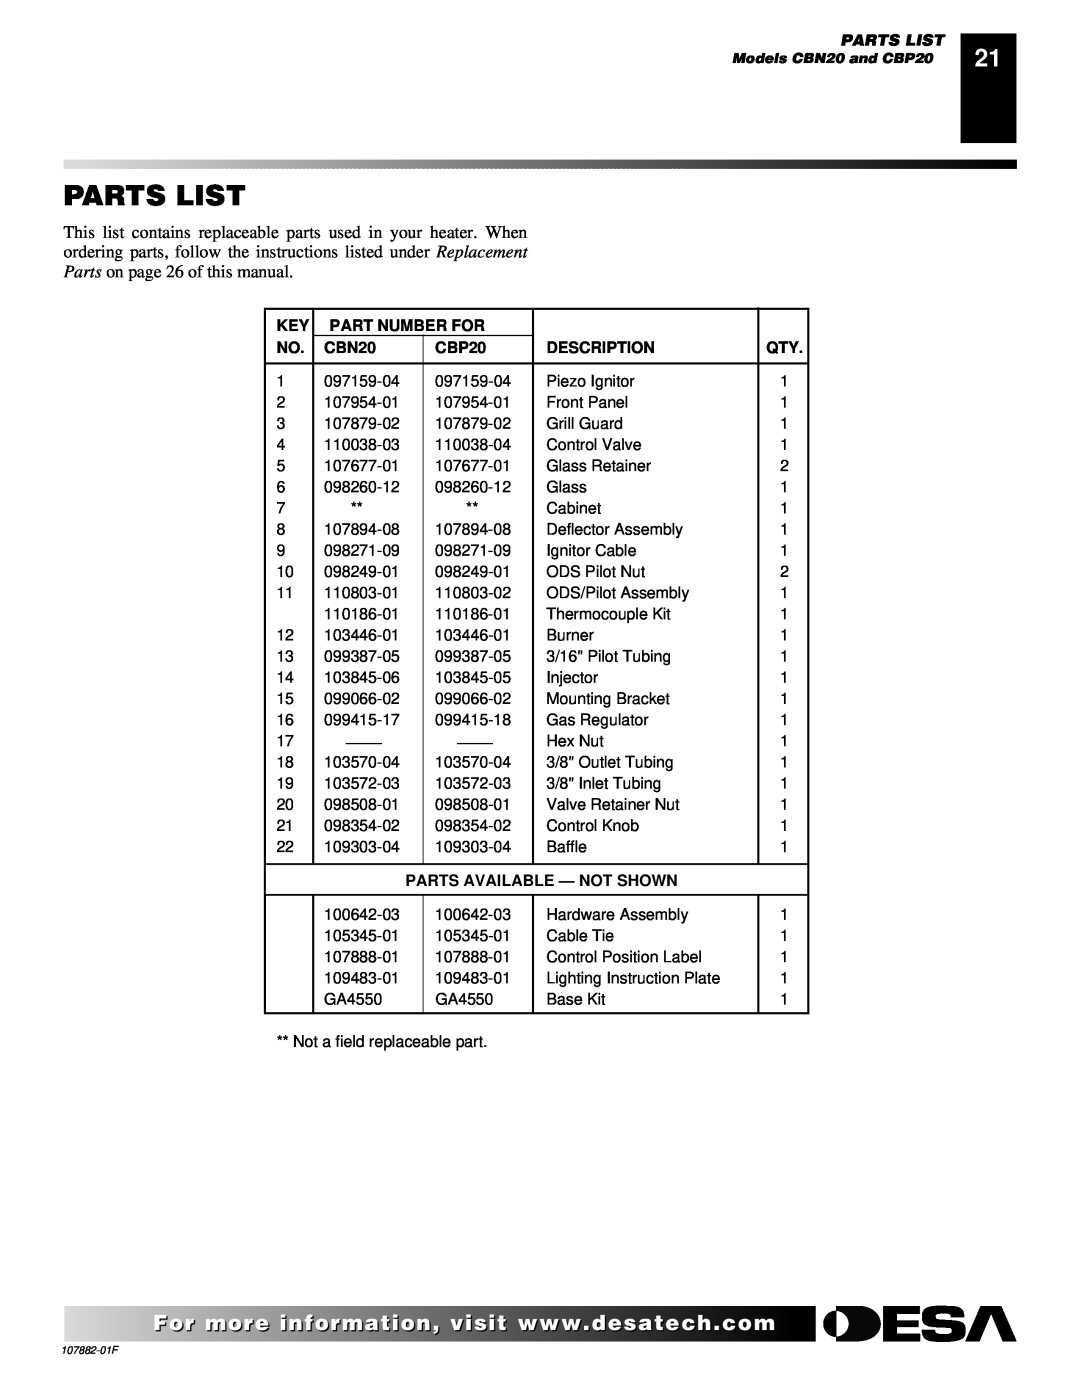 Desa CBN20 installation manual Parts List, Part Number For, CBP20, Description, Parts Available - Not Shown 